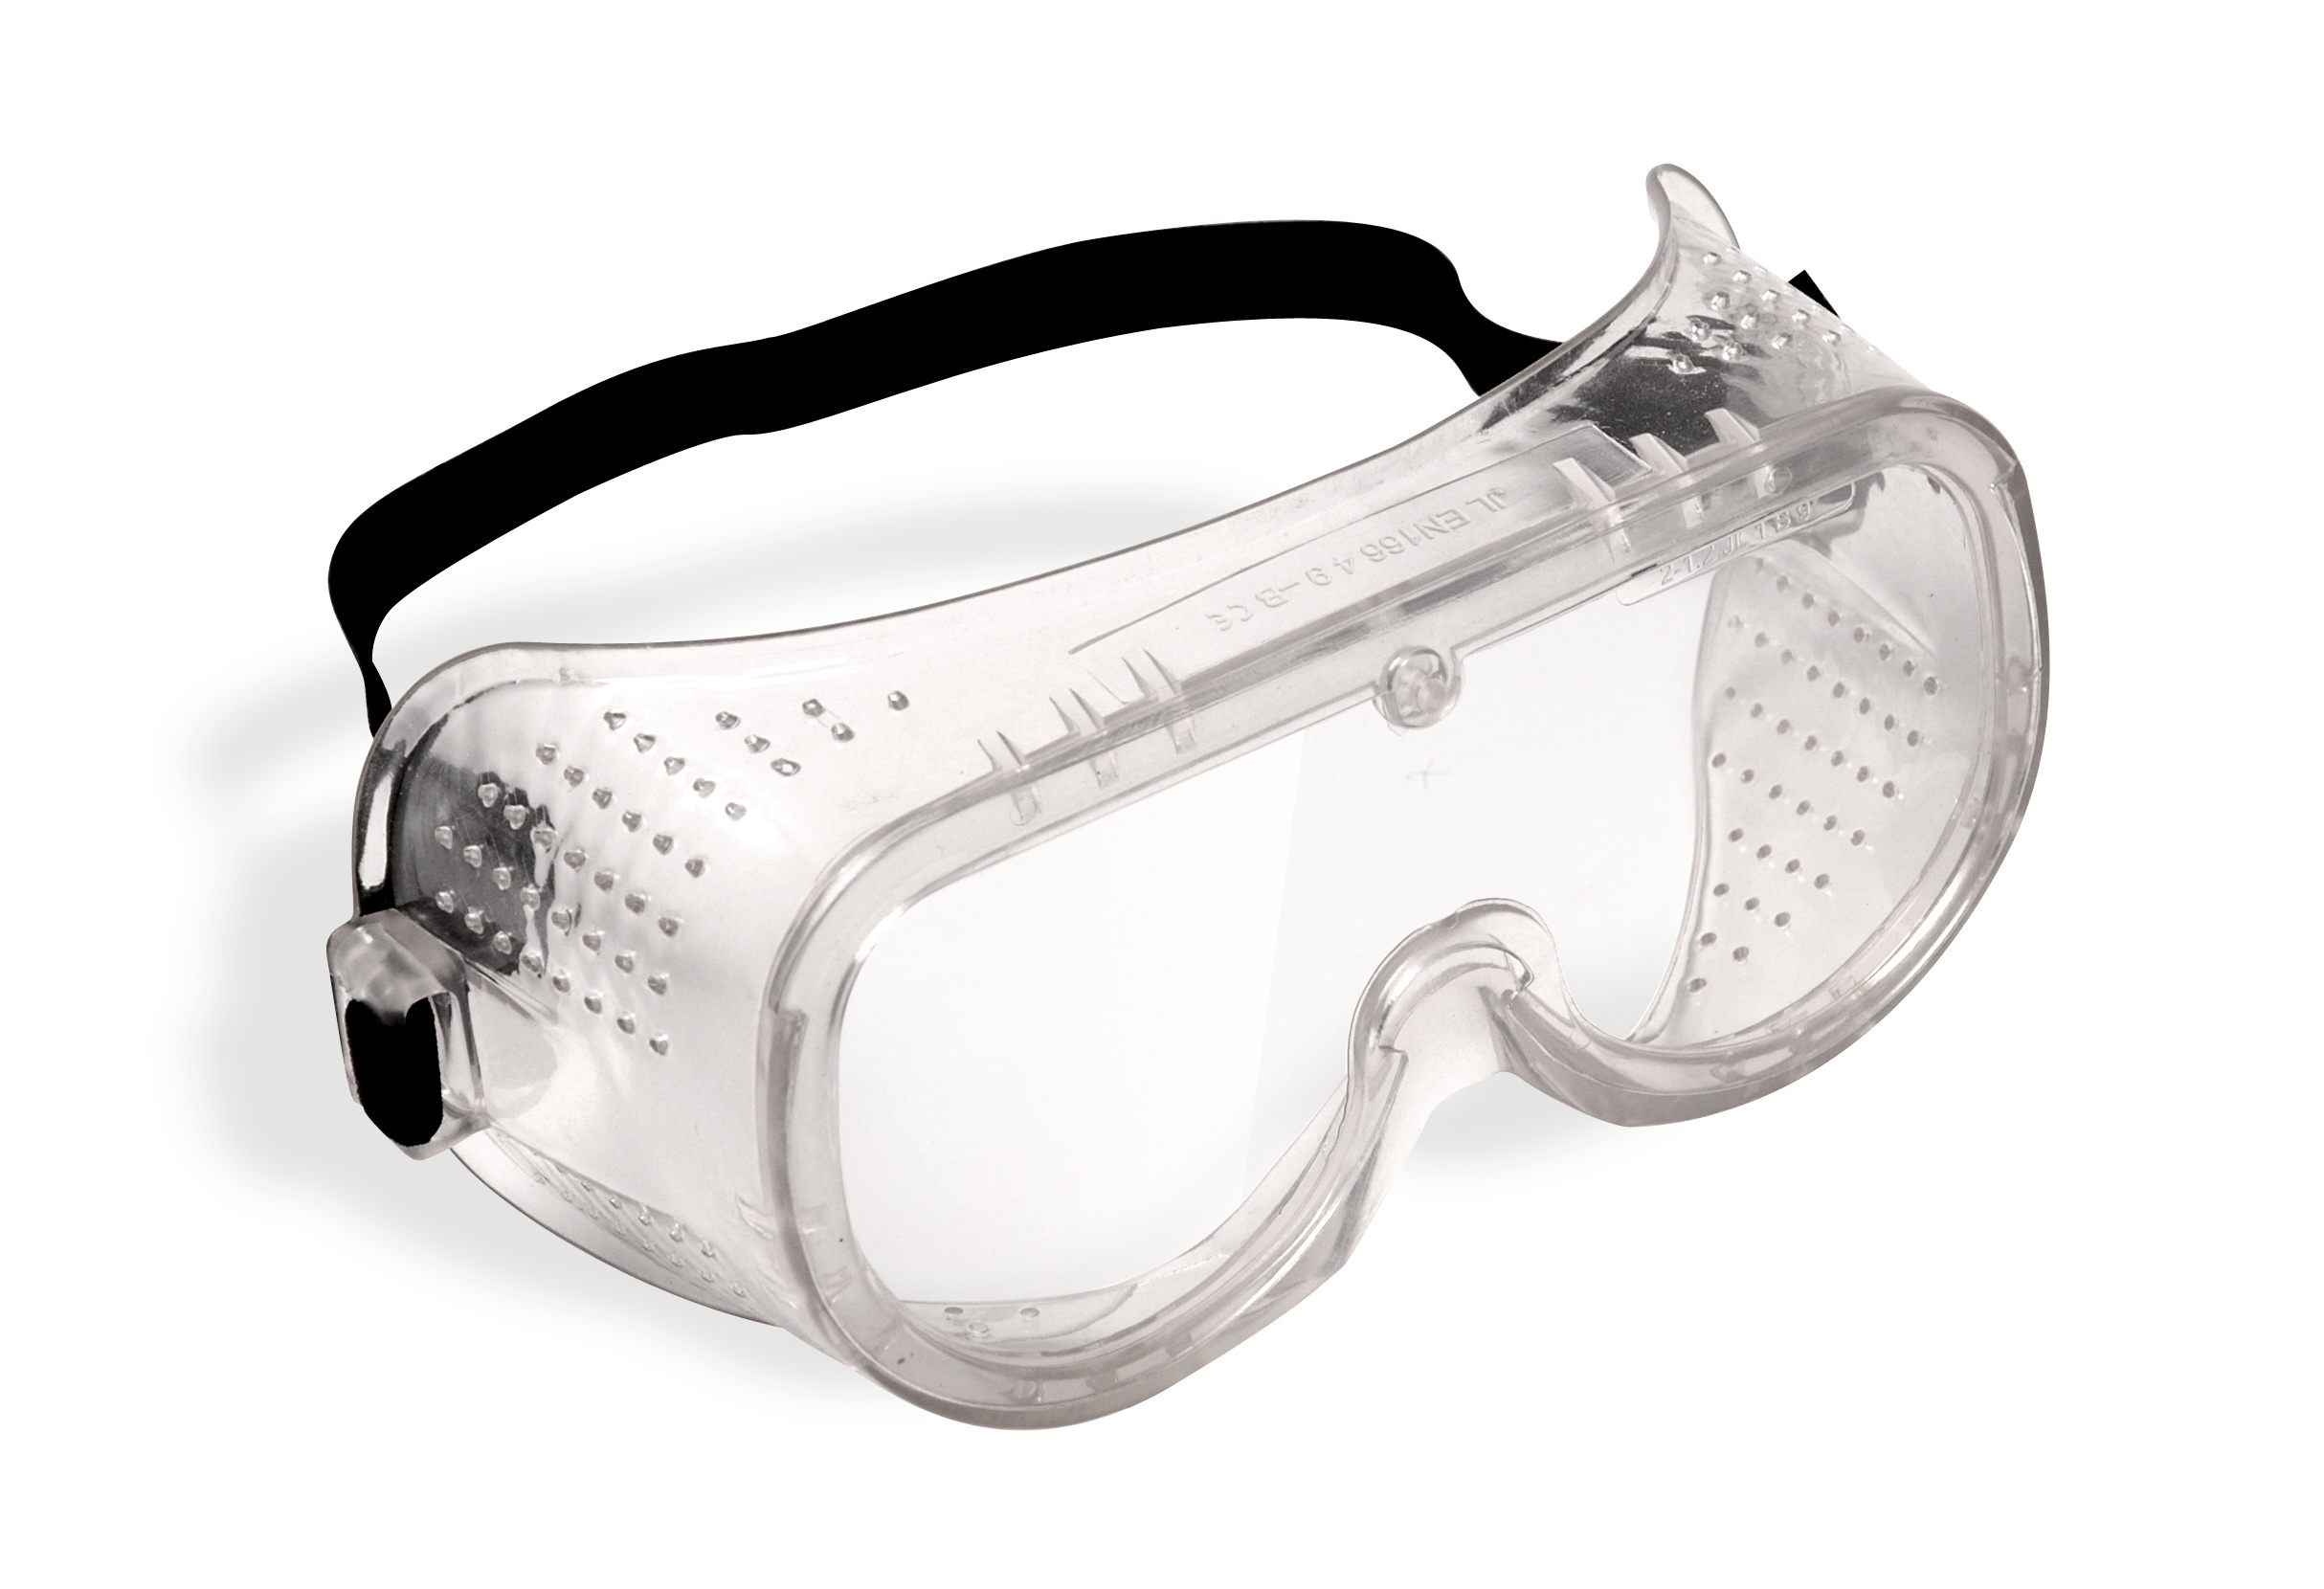 Защитные очки требования. Jsg1011-c Chem Vision очки защитные закрытого типа. Очки защитные "Исток" закрытого типа с прямой вентиляцией. Очки защитные с прямой вентиляцией р2 ПВ 964738. Очки защитные с прямой вентиляцией 89161.